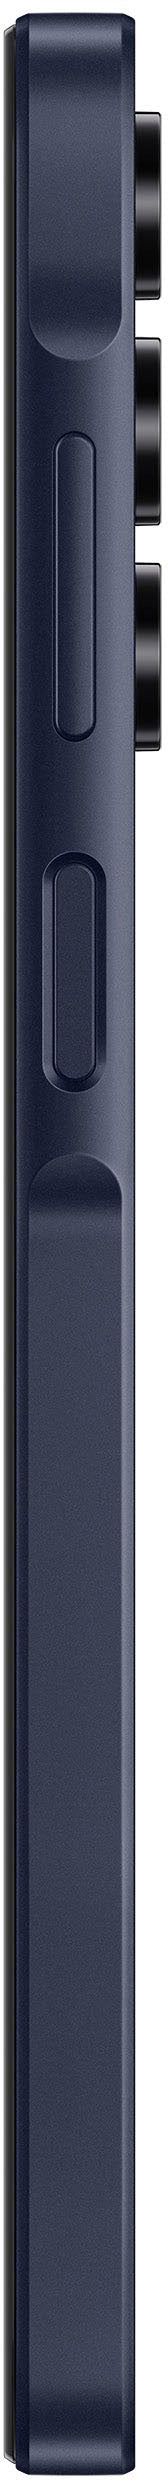 Samsung - Galaxy A15 5G 128GB (Unlocked) - Blue Black_1